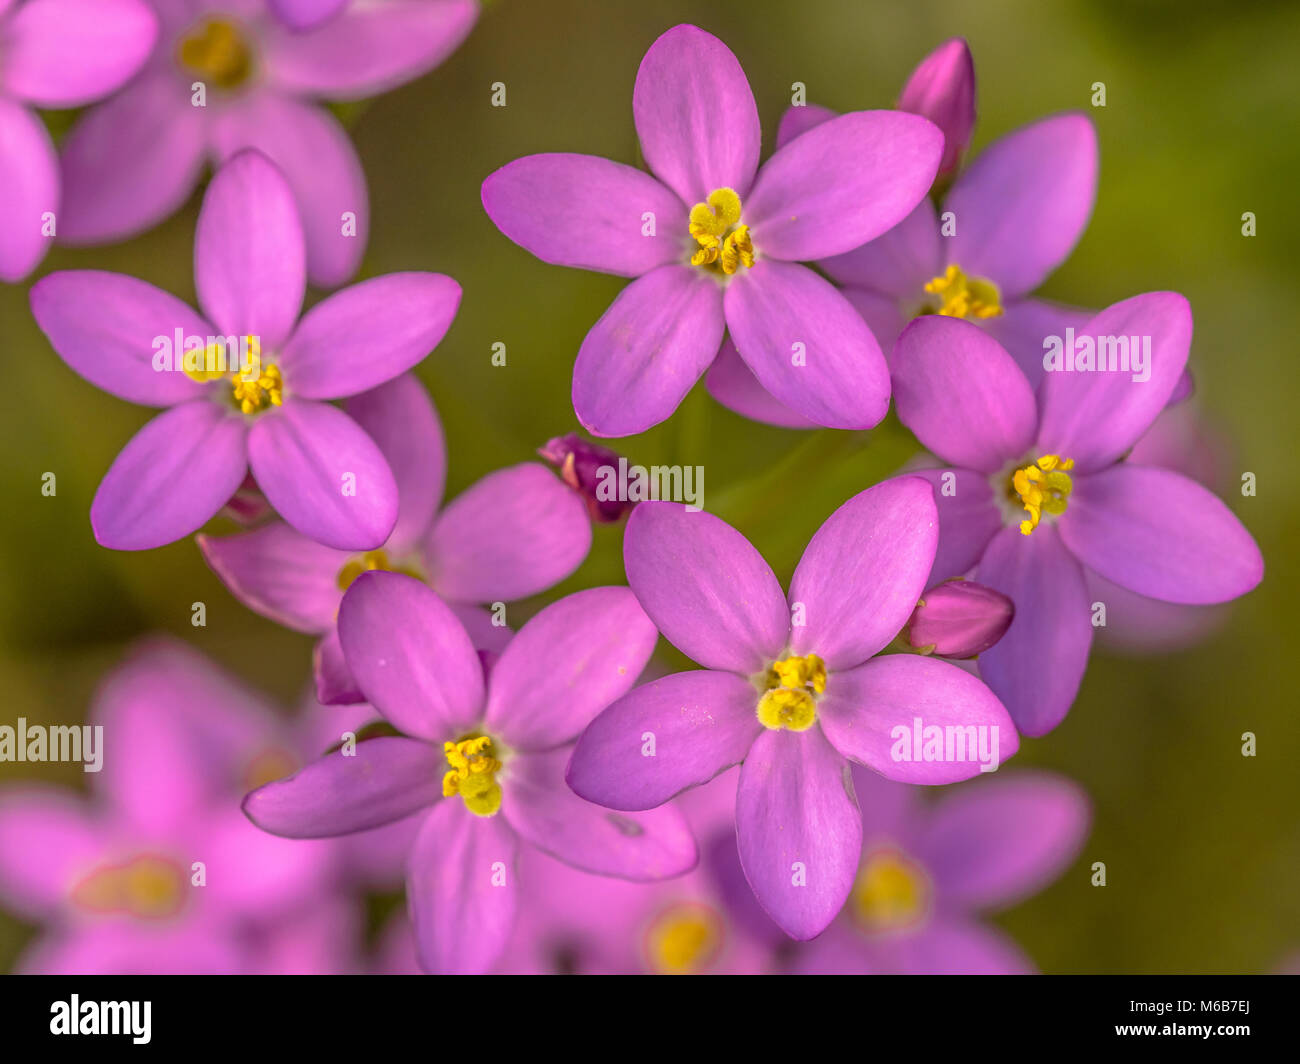 Centaurium flowers (Centaurium littorale) close up with green background Stock Photo